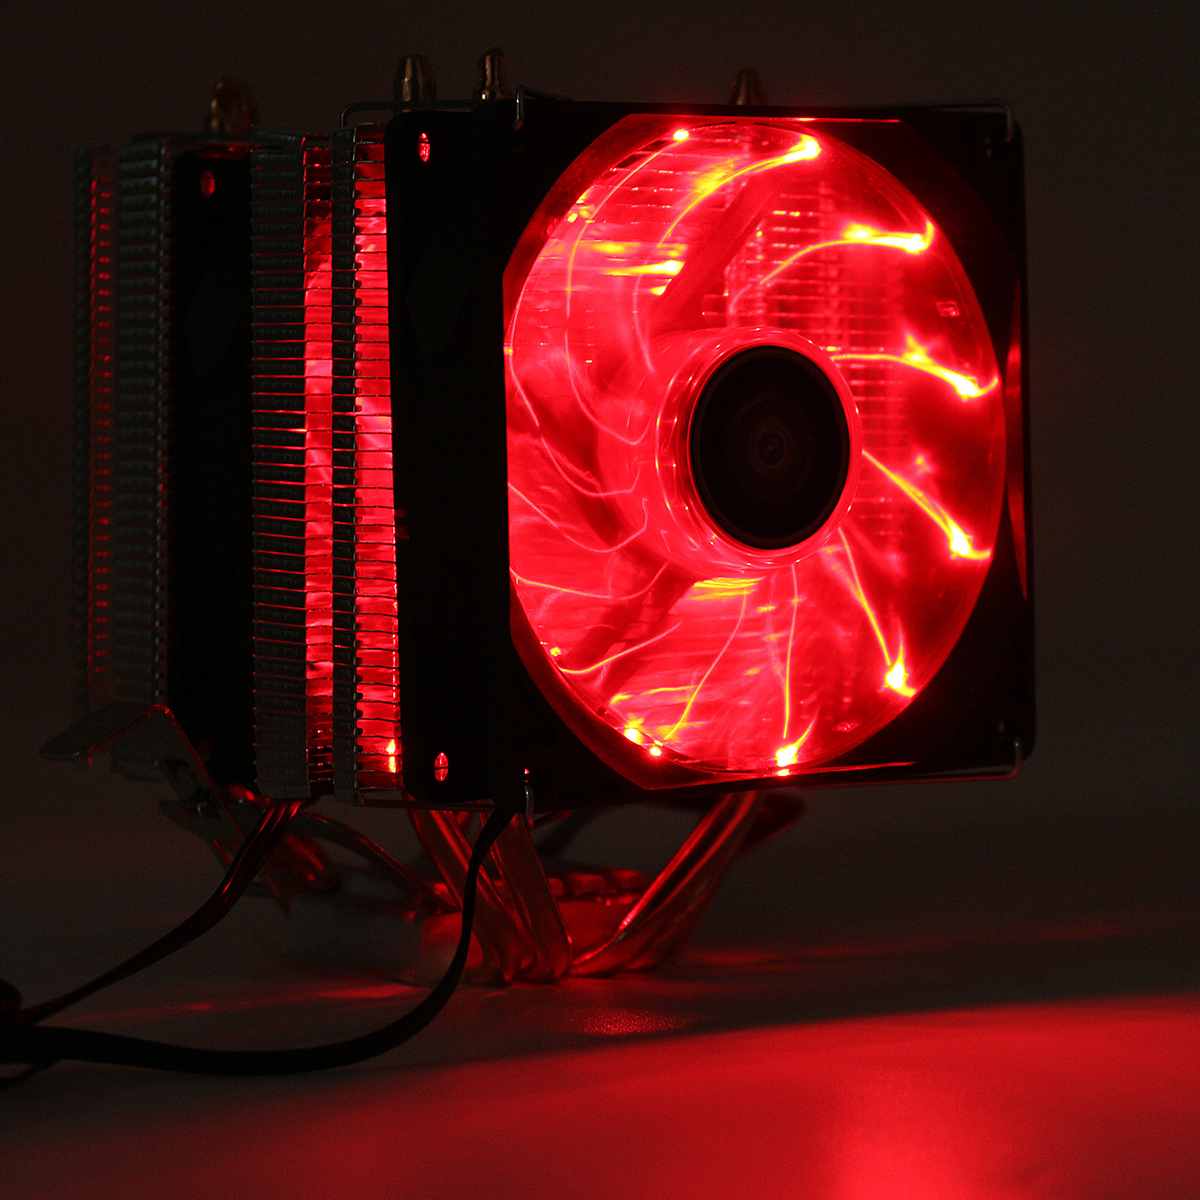 Quiet CPU Cooler Cooling Fan LED Double Heat Pipe Dual Fan Heat Sink Heatsink Radiator For LGA 1155 775 1156 AMD